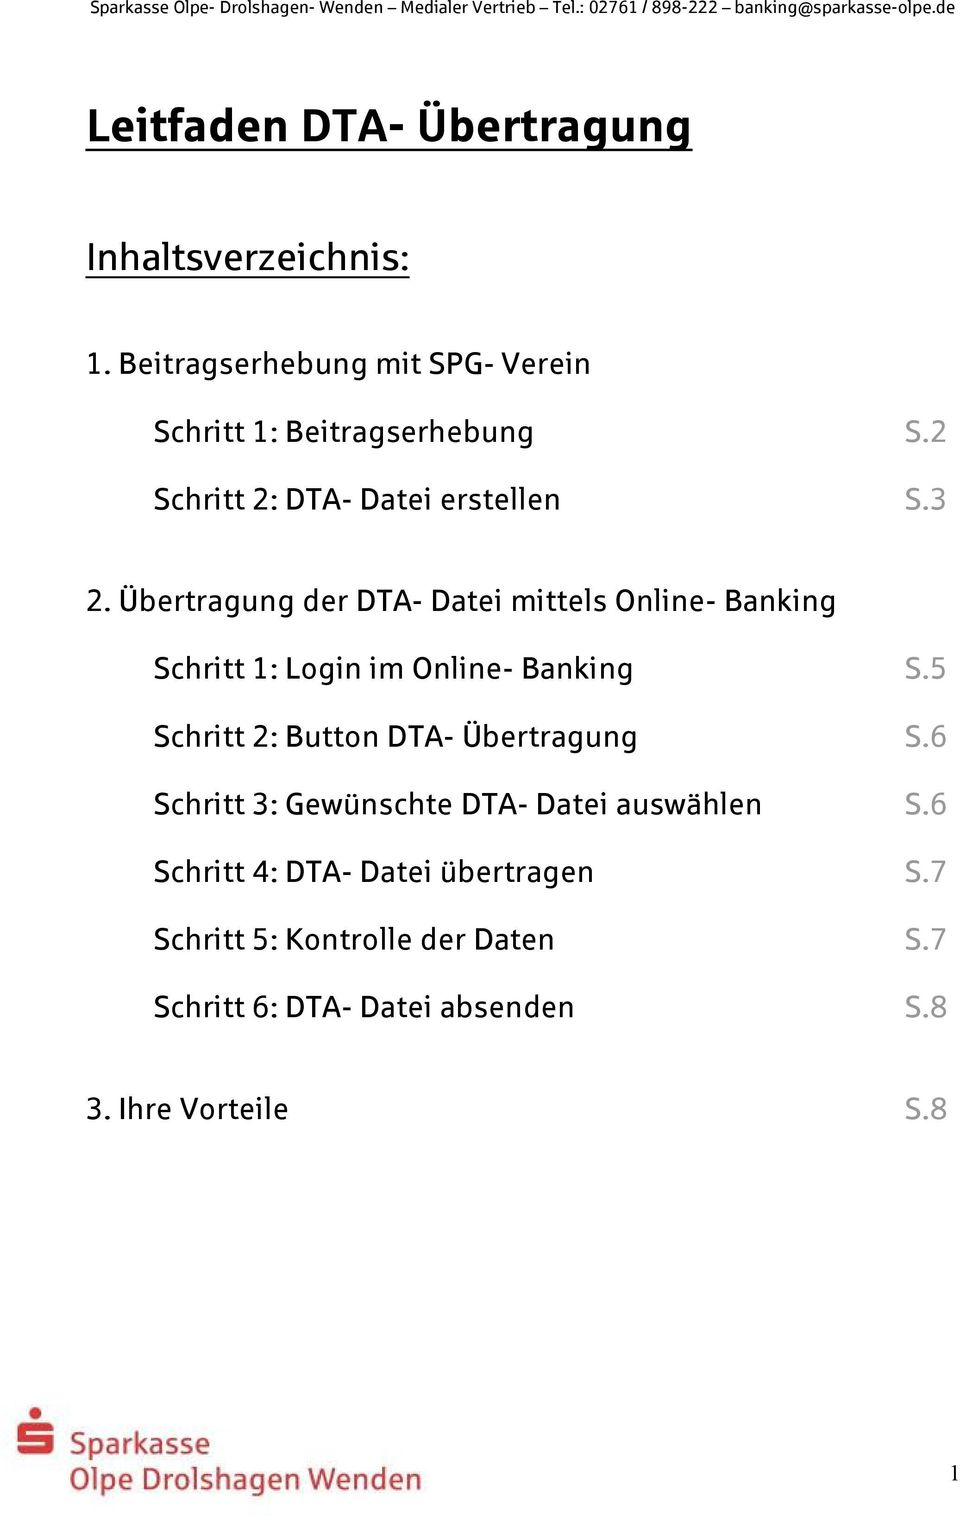 Übertragung der DTA- Datei mittels Online- Banking Schritt 1: Login im Online- Banking S.